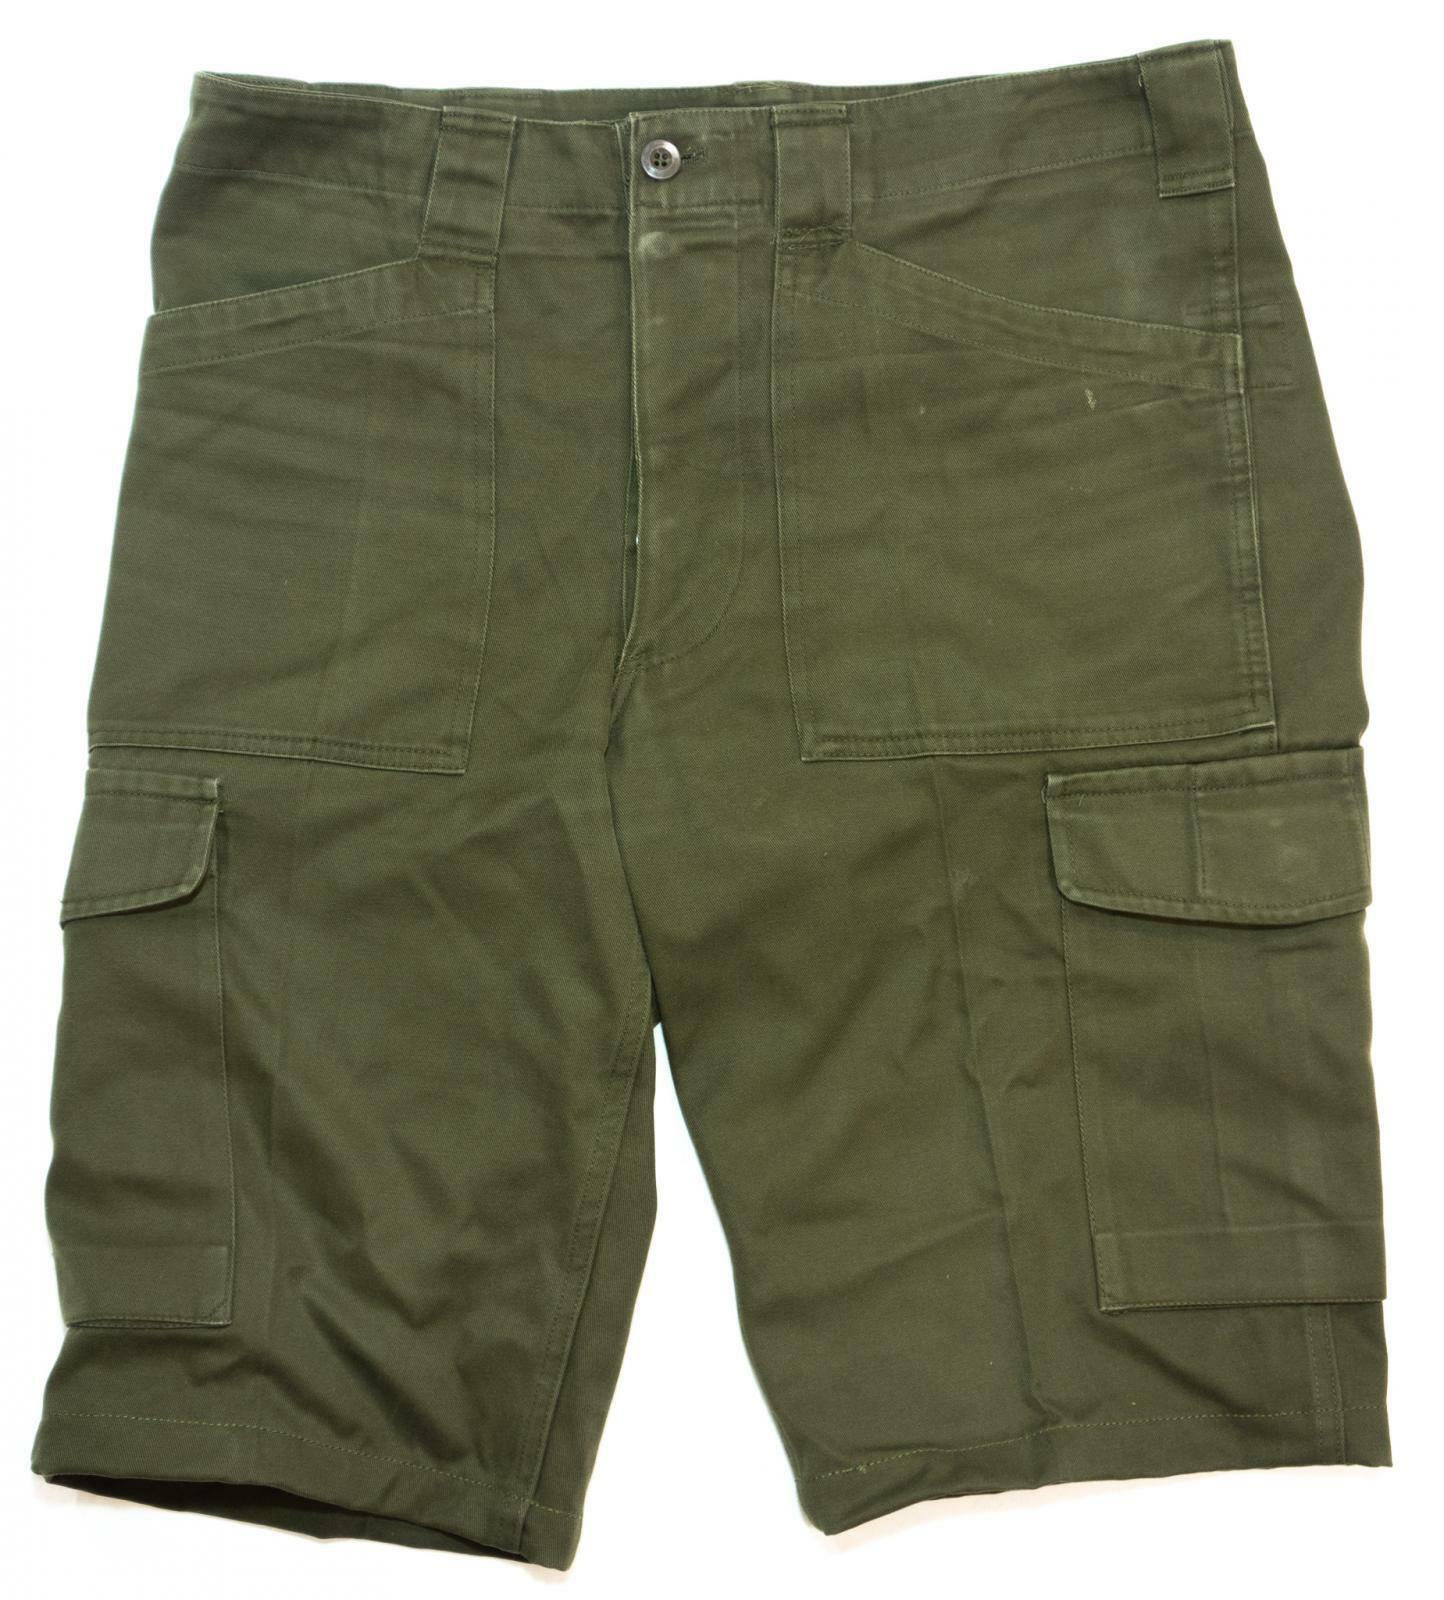 British Army Surplus Lightweight Green Shorts Grade 1 